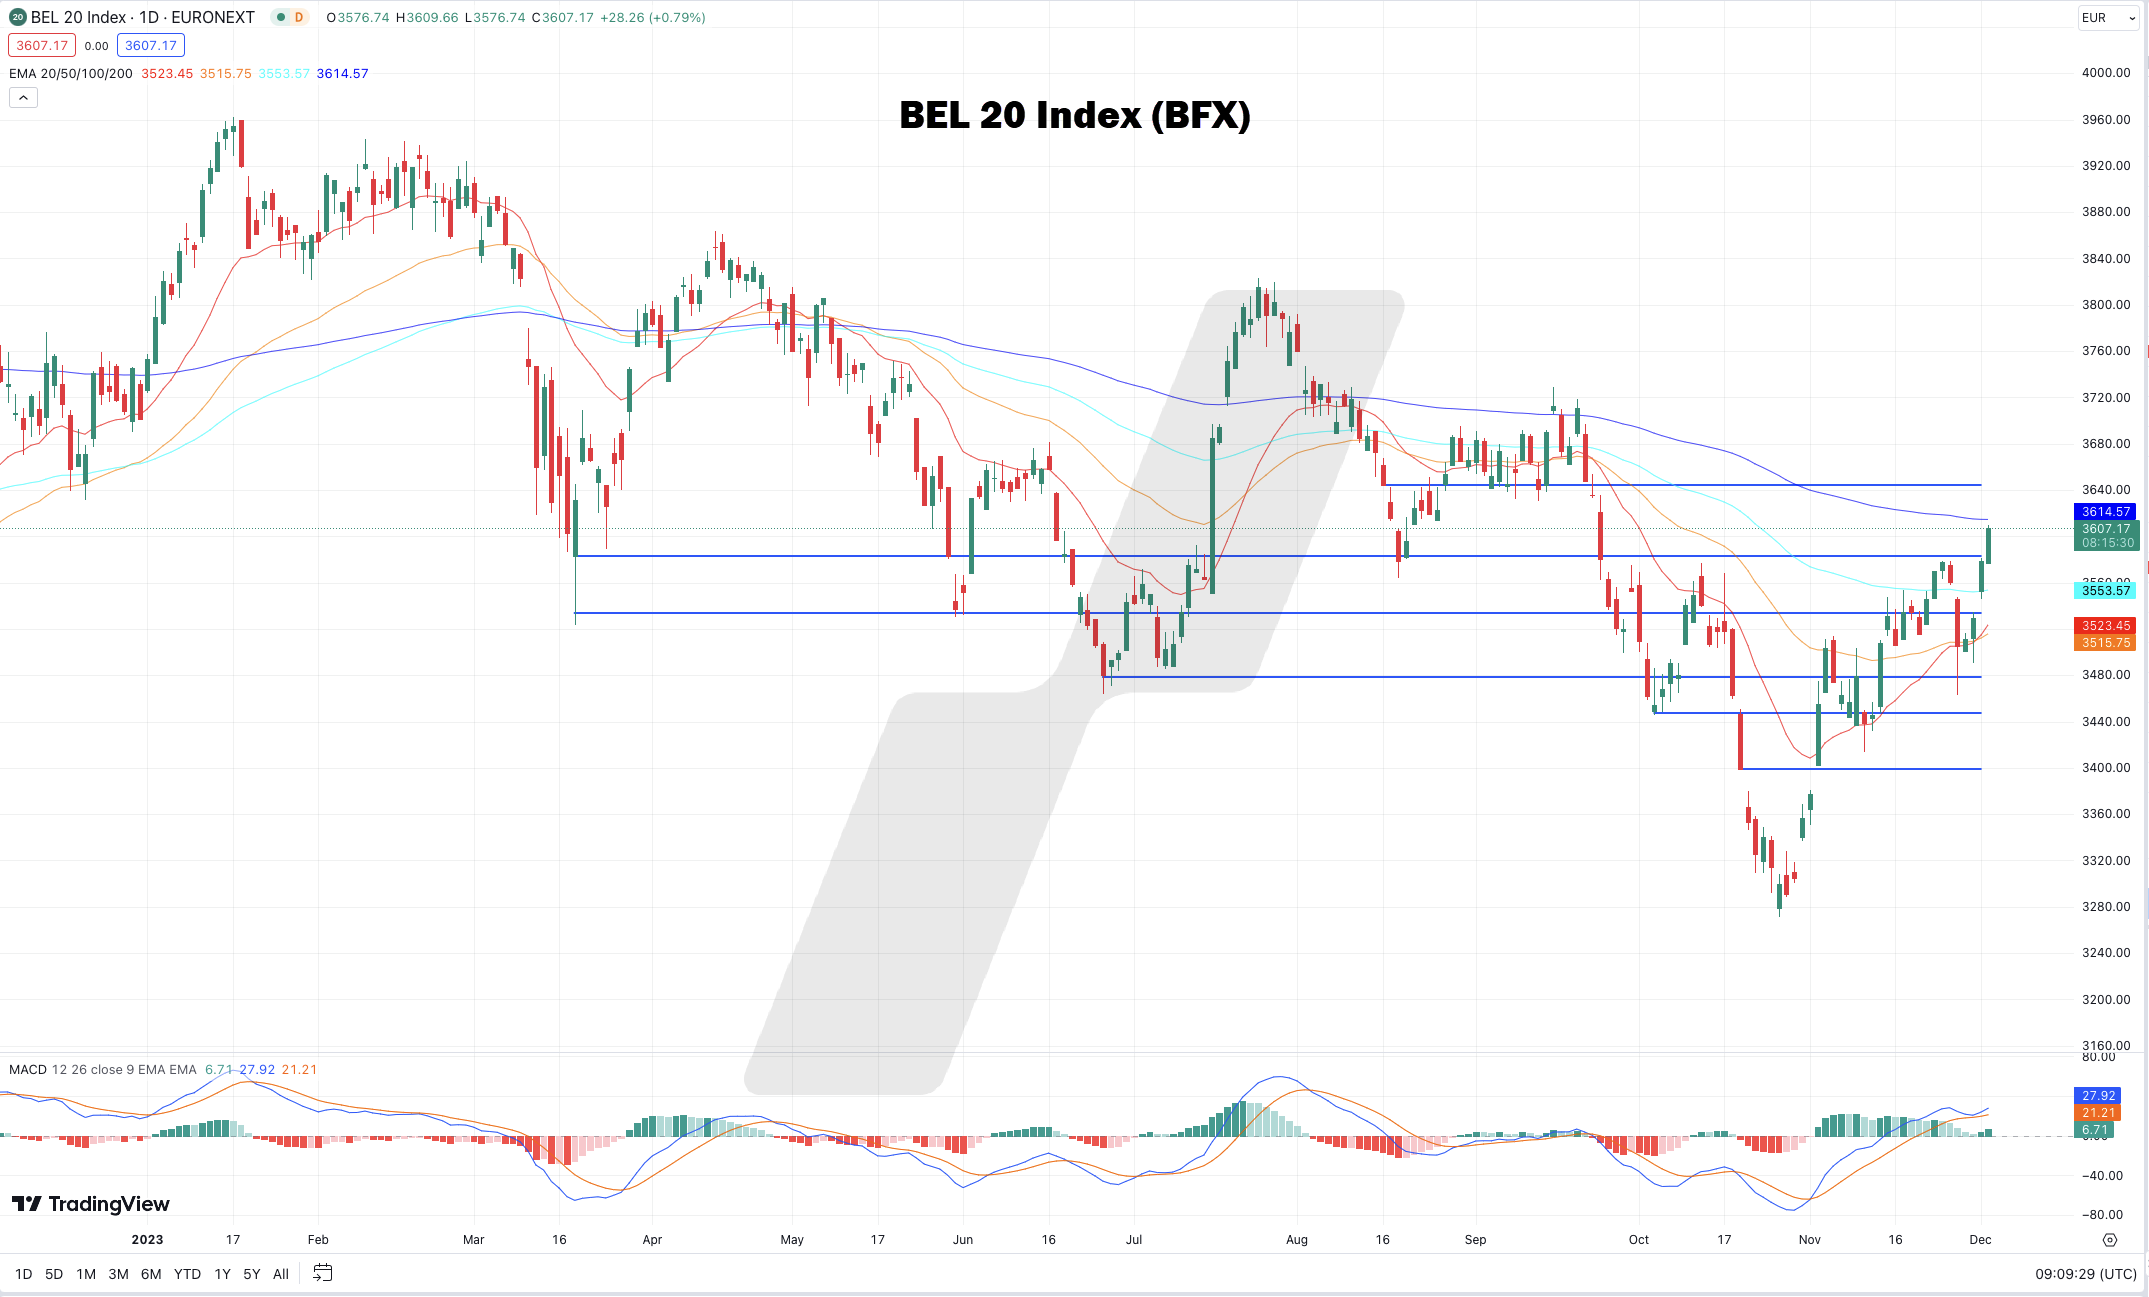 BEL 20 index koers | BEL 20 index nieuws | Bel 20 index chart